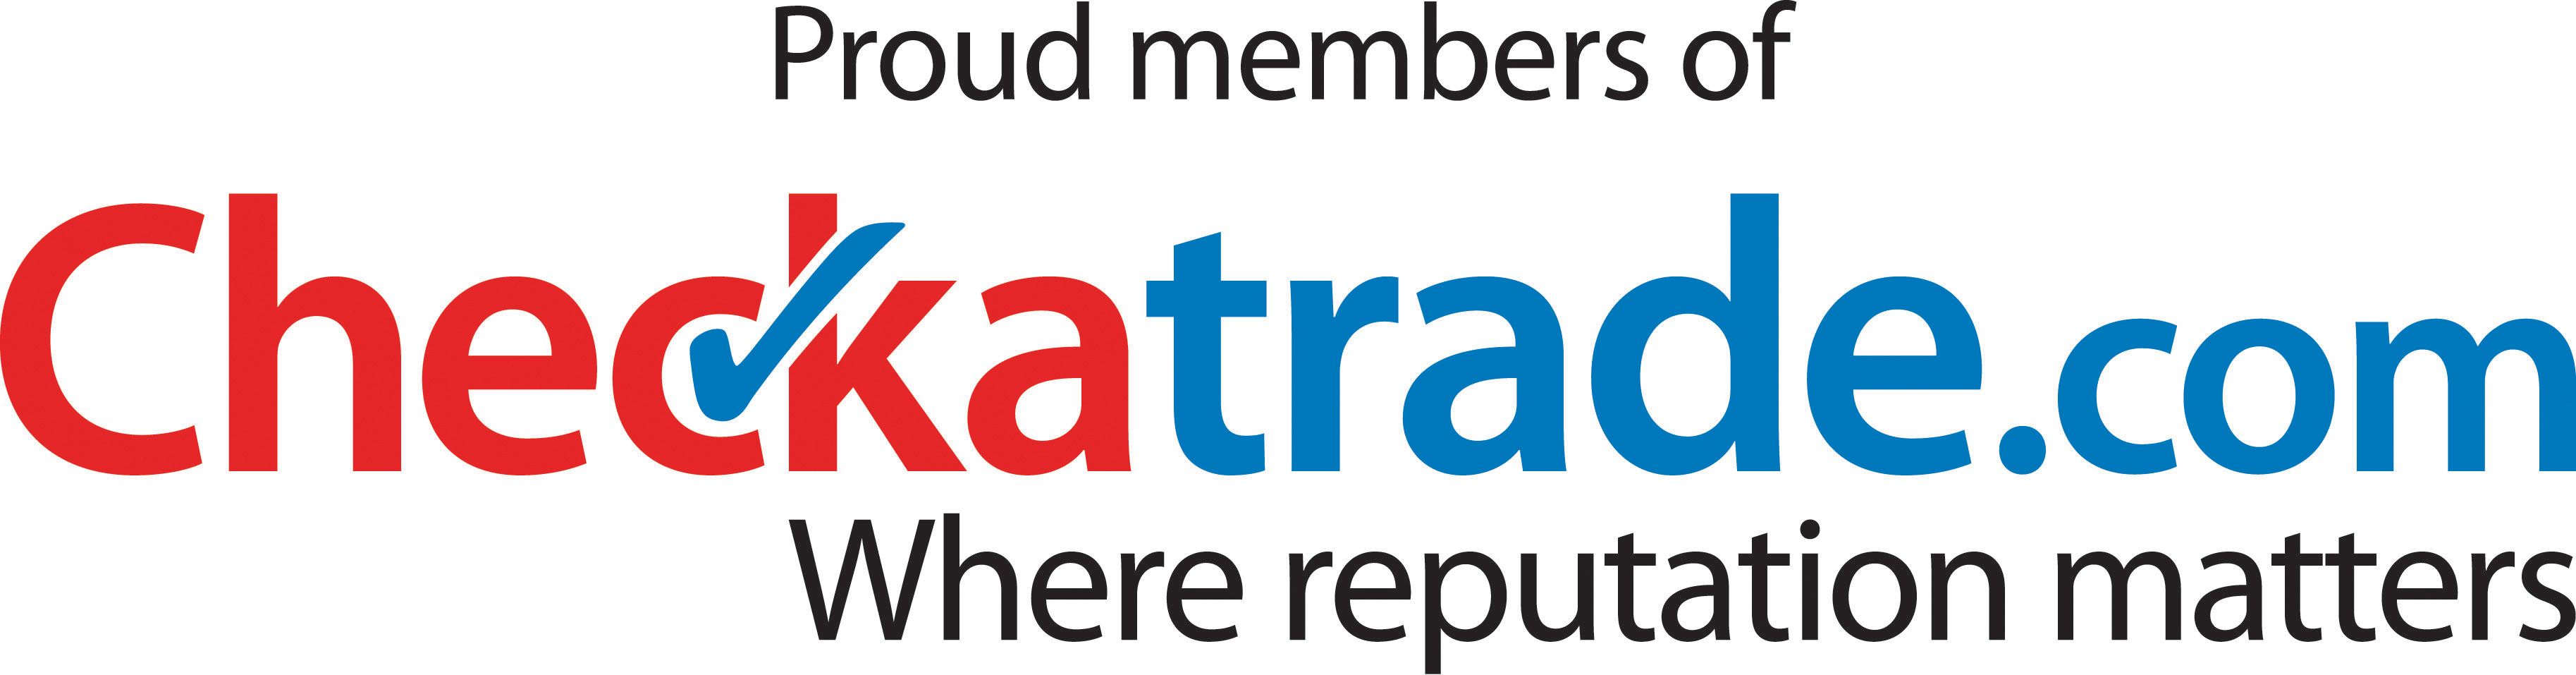 check-a-trade logo